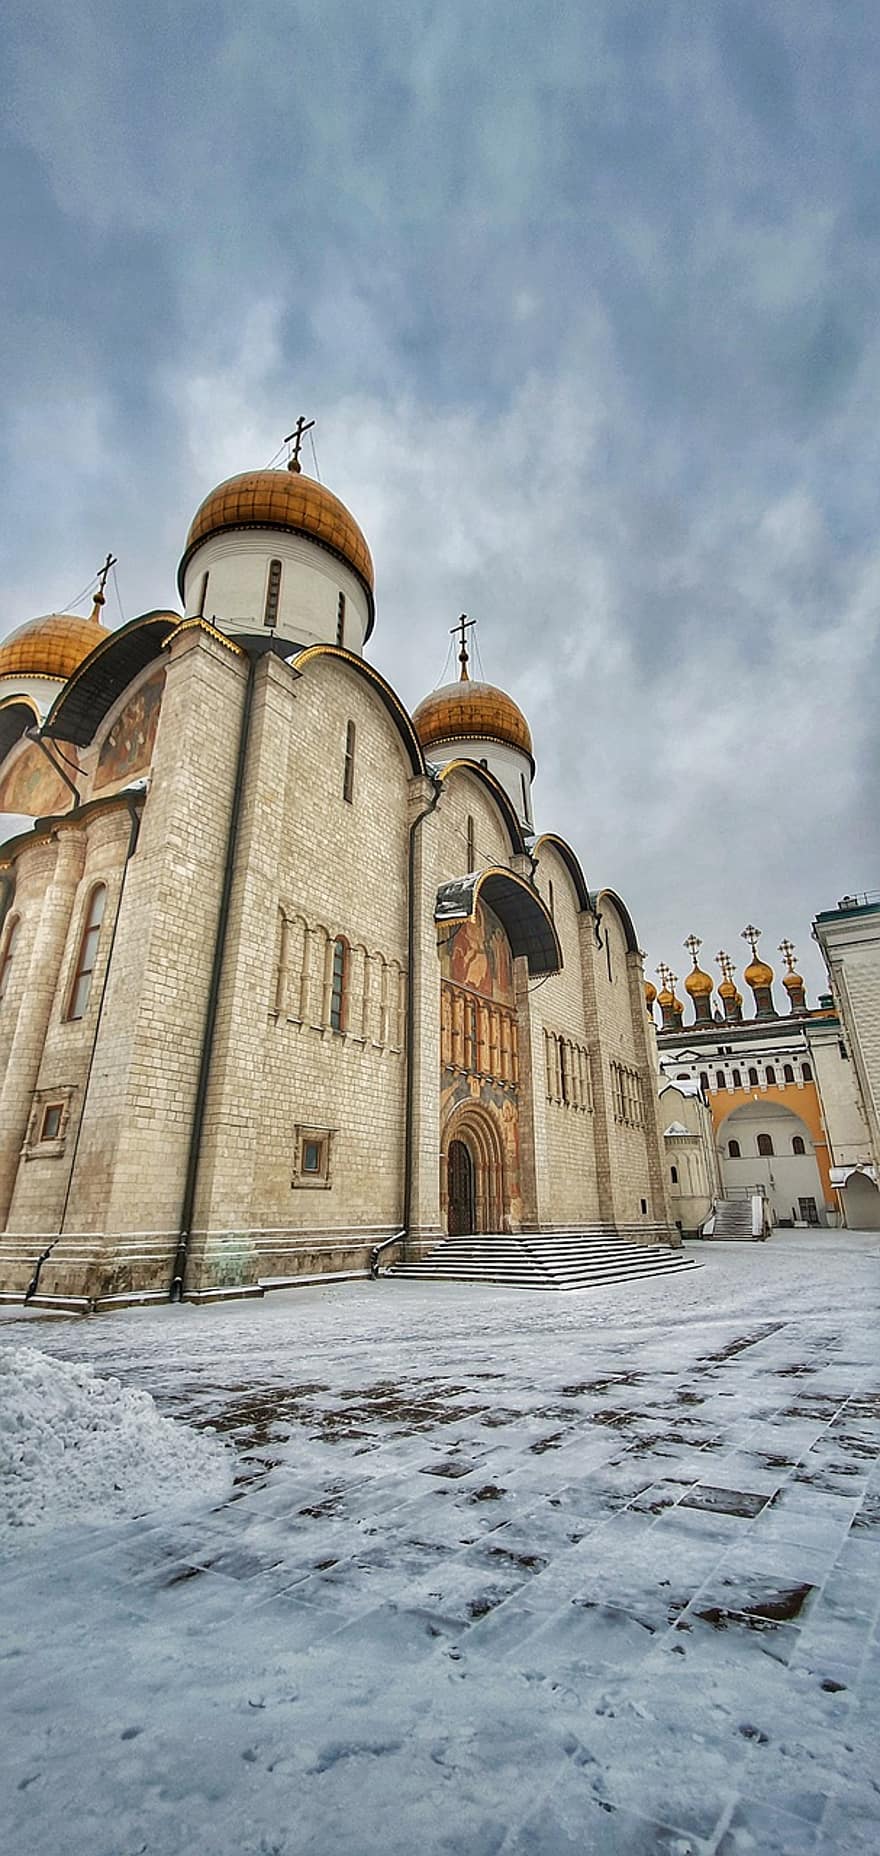 चर्च, इमारत, मास्को, क्रेमलिन, रूस, पुराना, आर्किटेक्चर, ईसाई धर्म, धर्म, संस्कृतियों, प्रसिद्ध स्थल